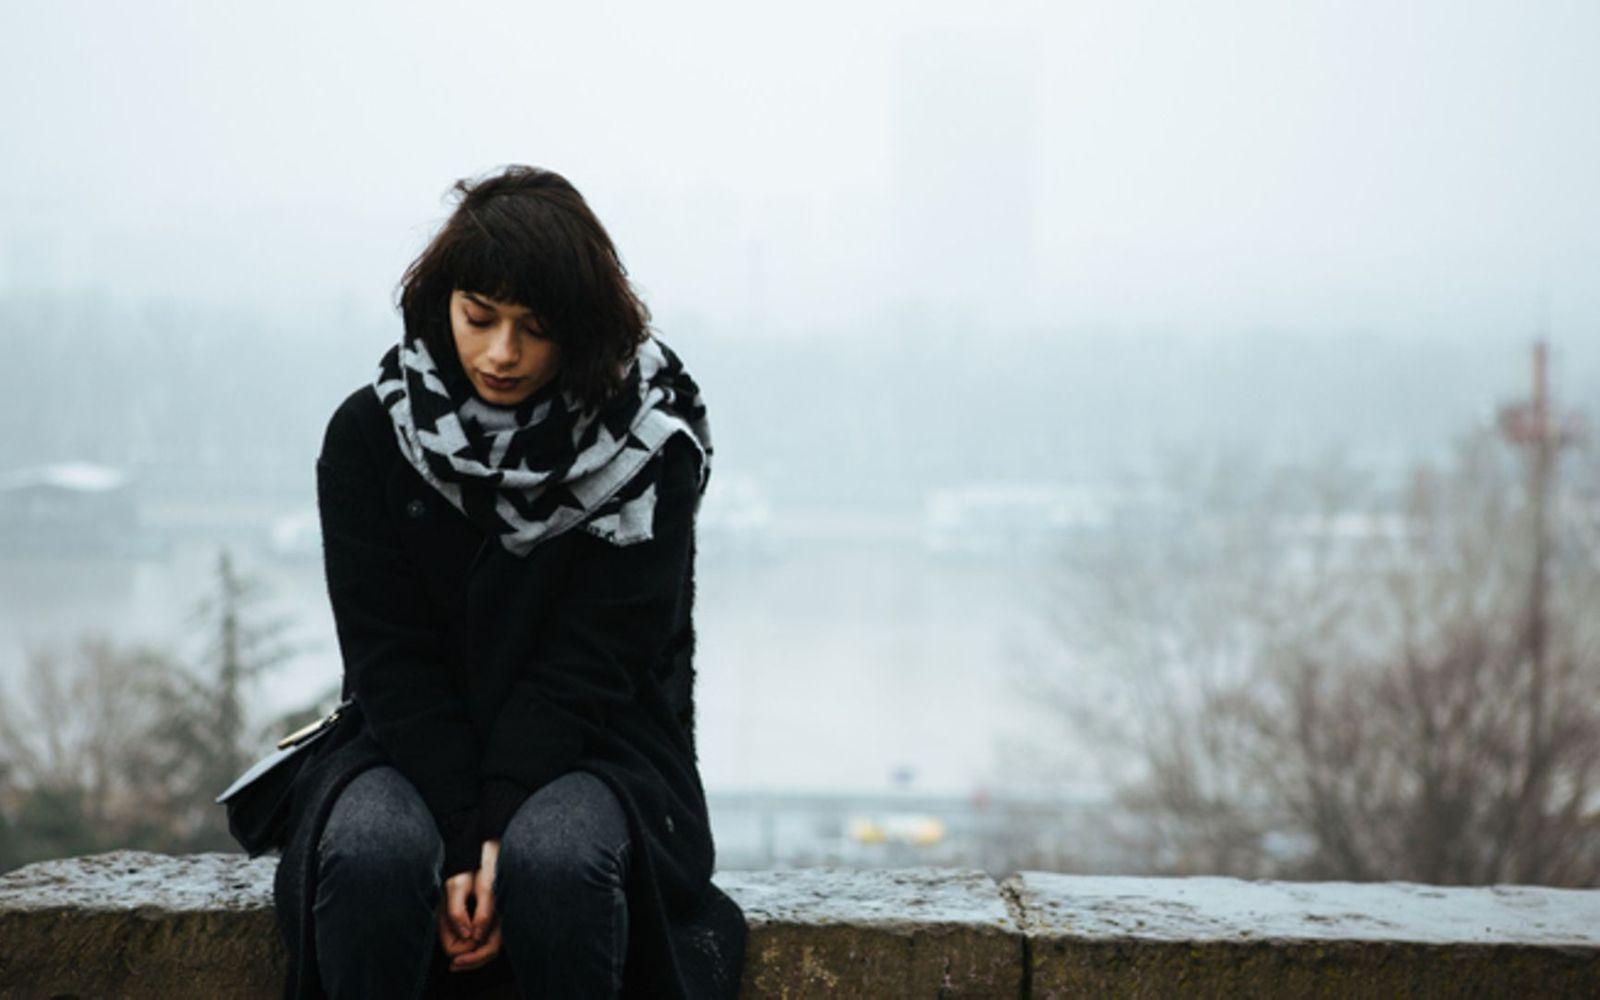 Winterdepression: Frau sitzt in einer Winterlandschaft traurig auf einer Mauer.